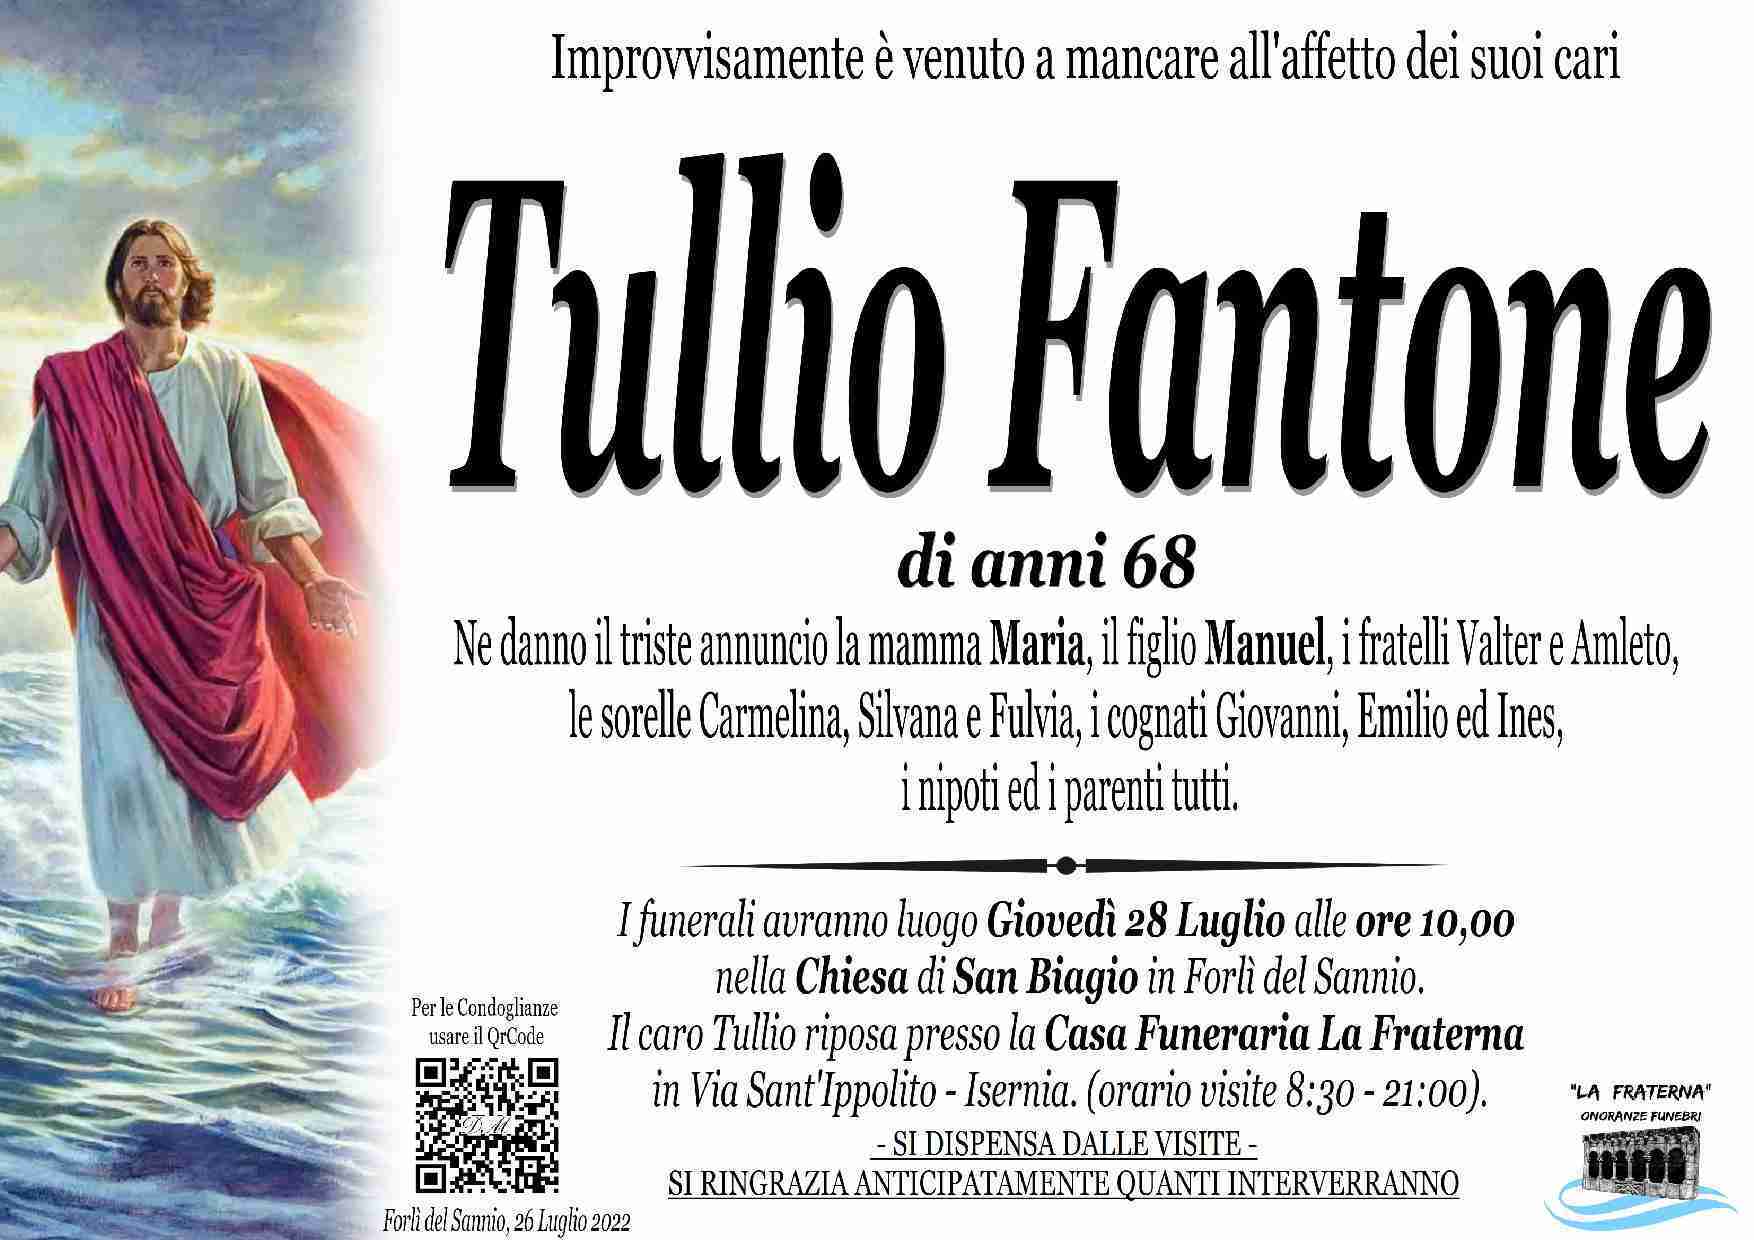 Tullio Fantone